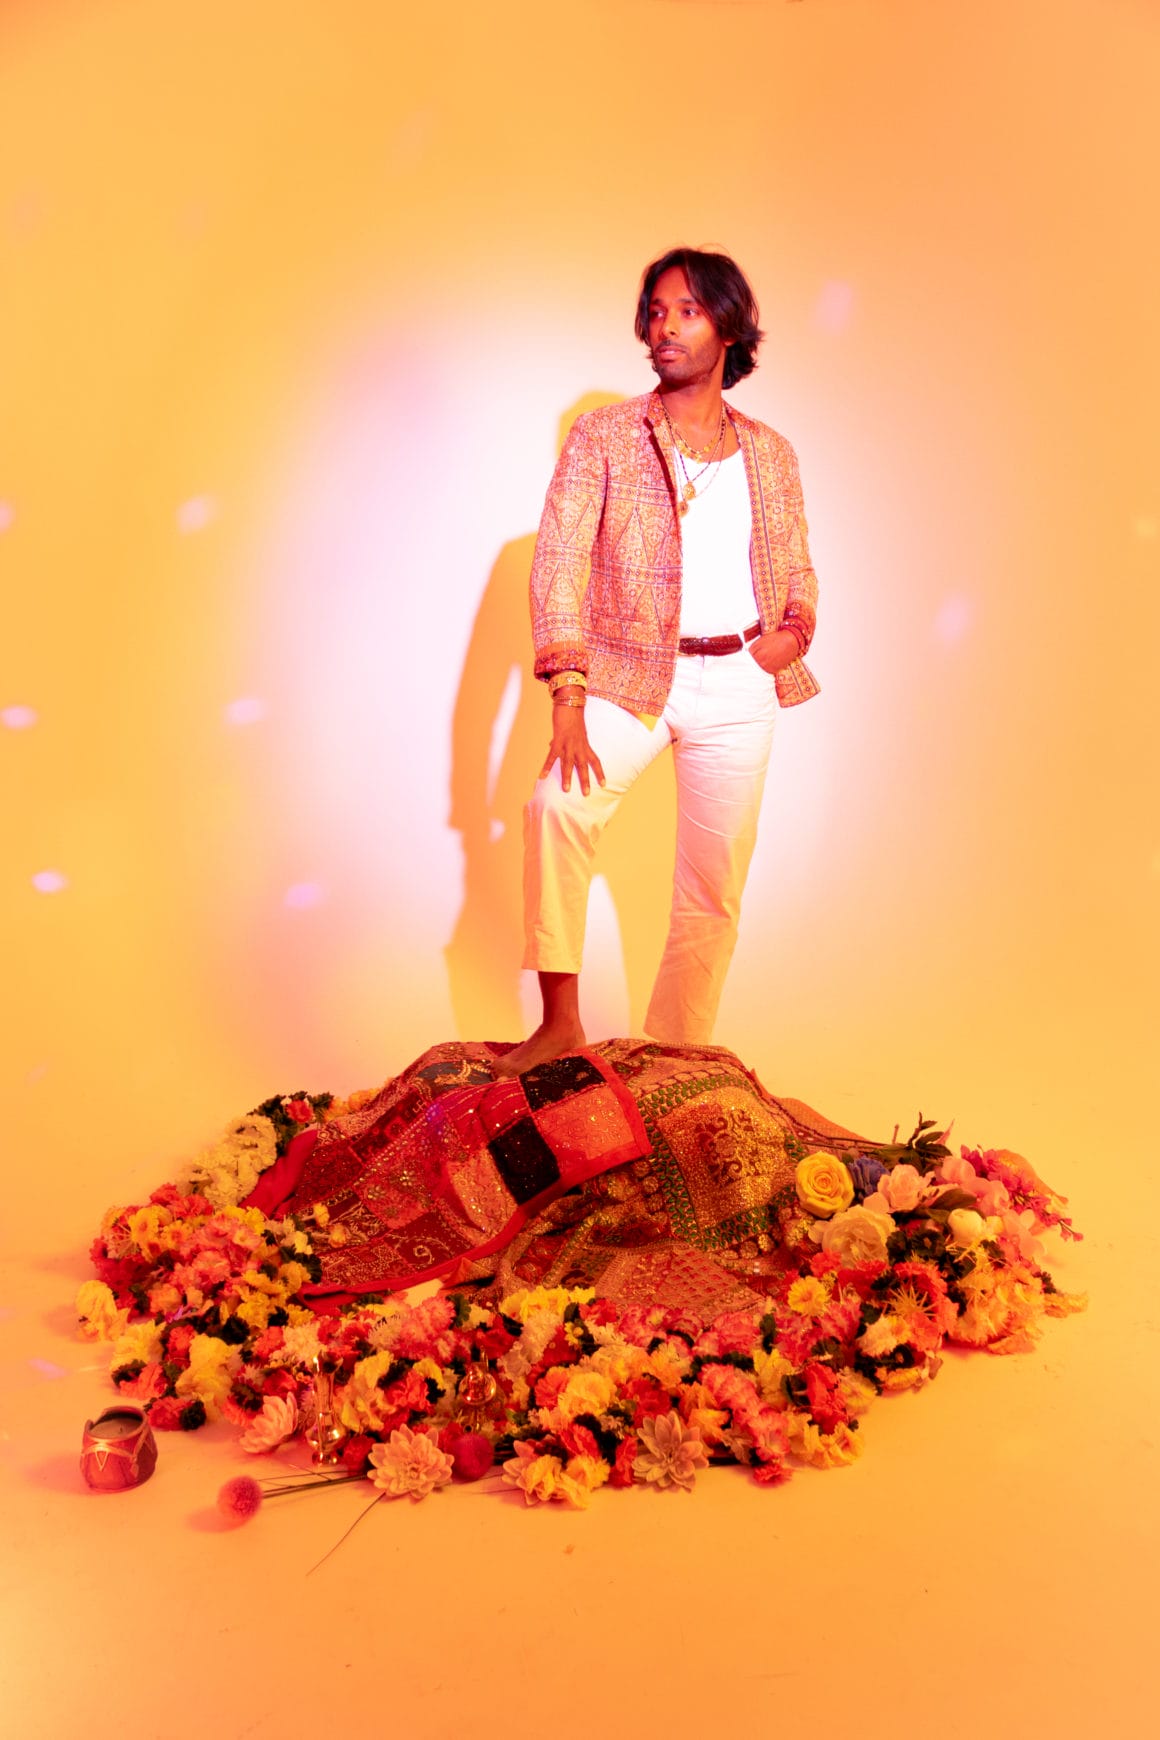 un deux le dj qui réinvente un mantra avec son nouveau titre Ganapataye
il posesur un tapis de fleurs